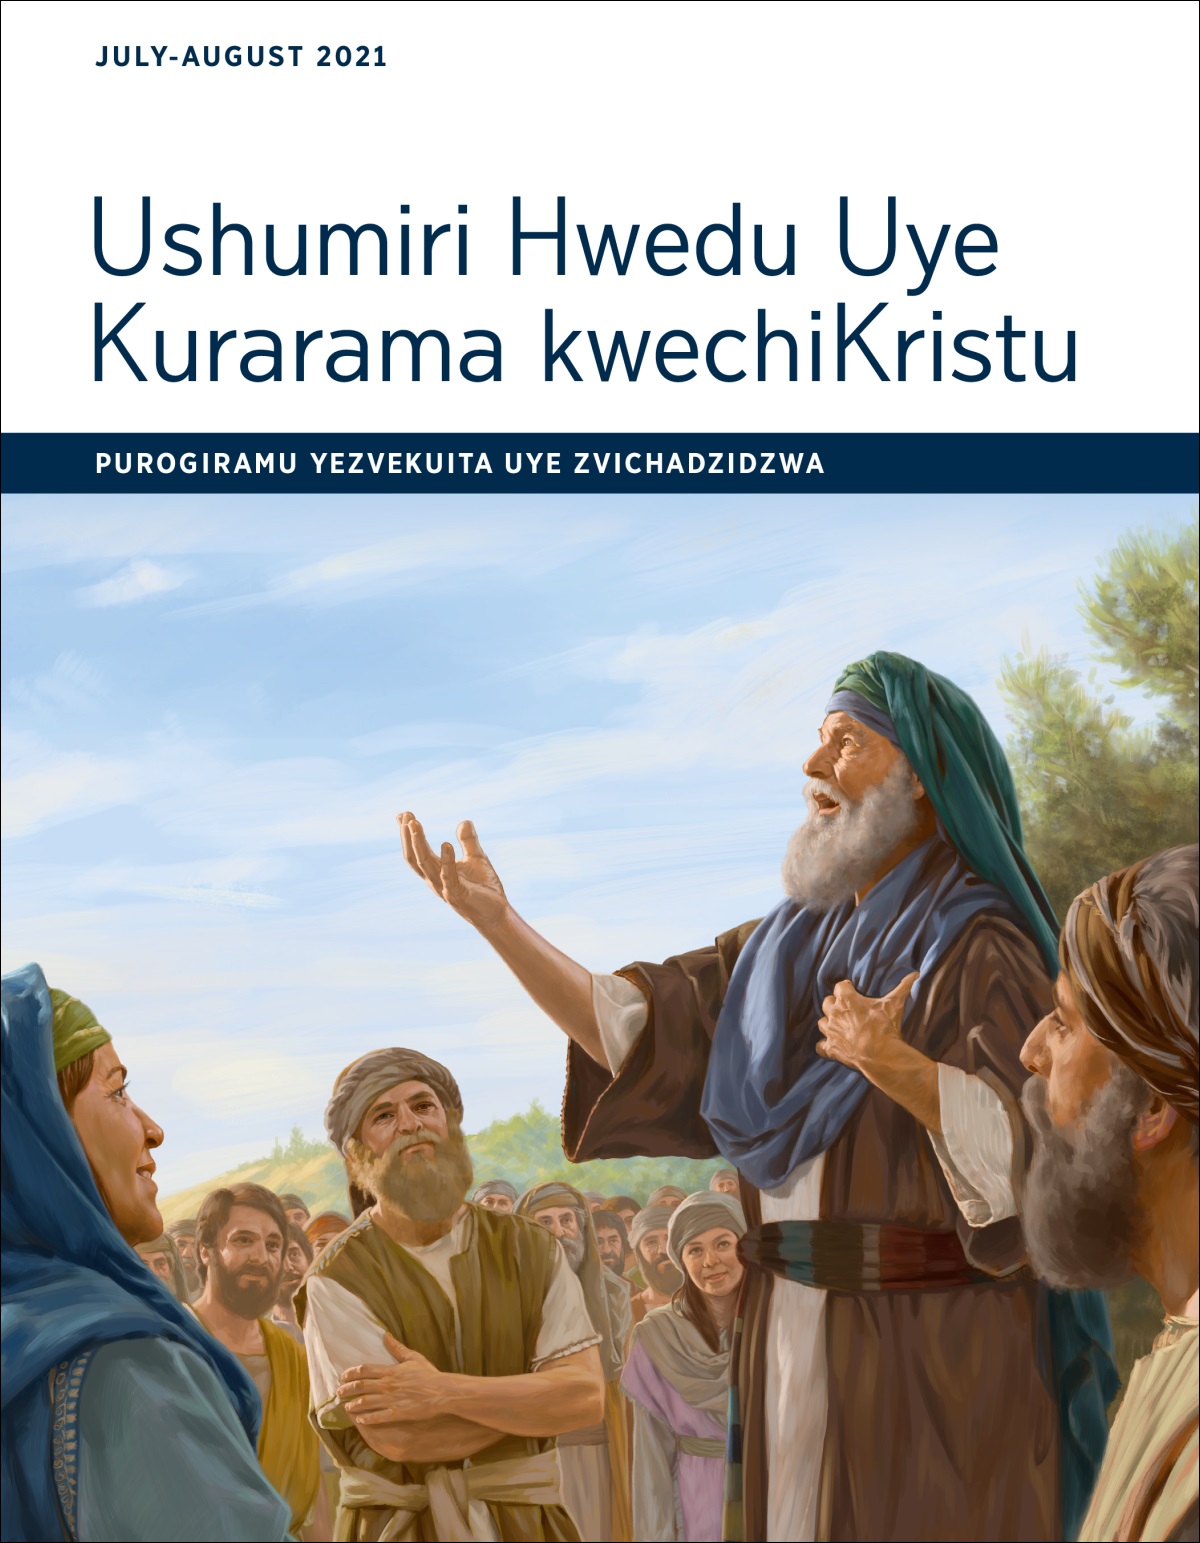 Ushumiri Hwedu Uye Kurarama kwechiKristu​—⁠Purogiramu Yezvekuita Uye Zvichadzidzwa, July-August 2021.